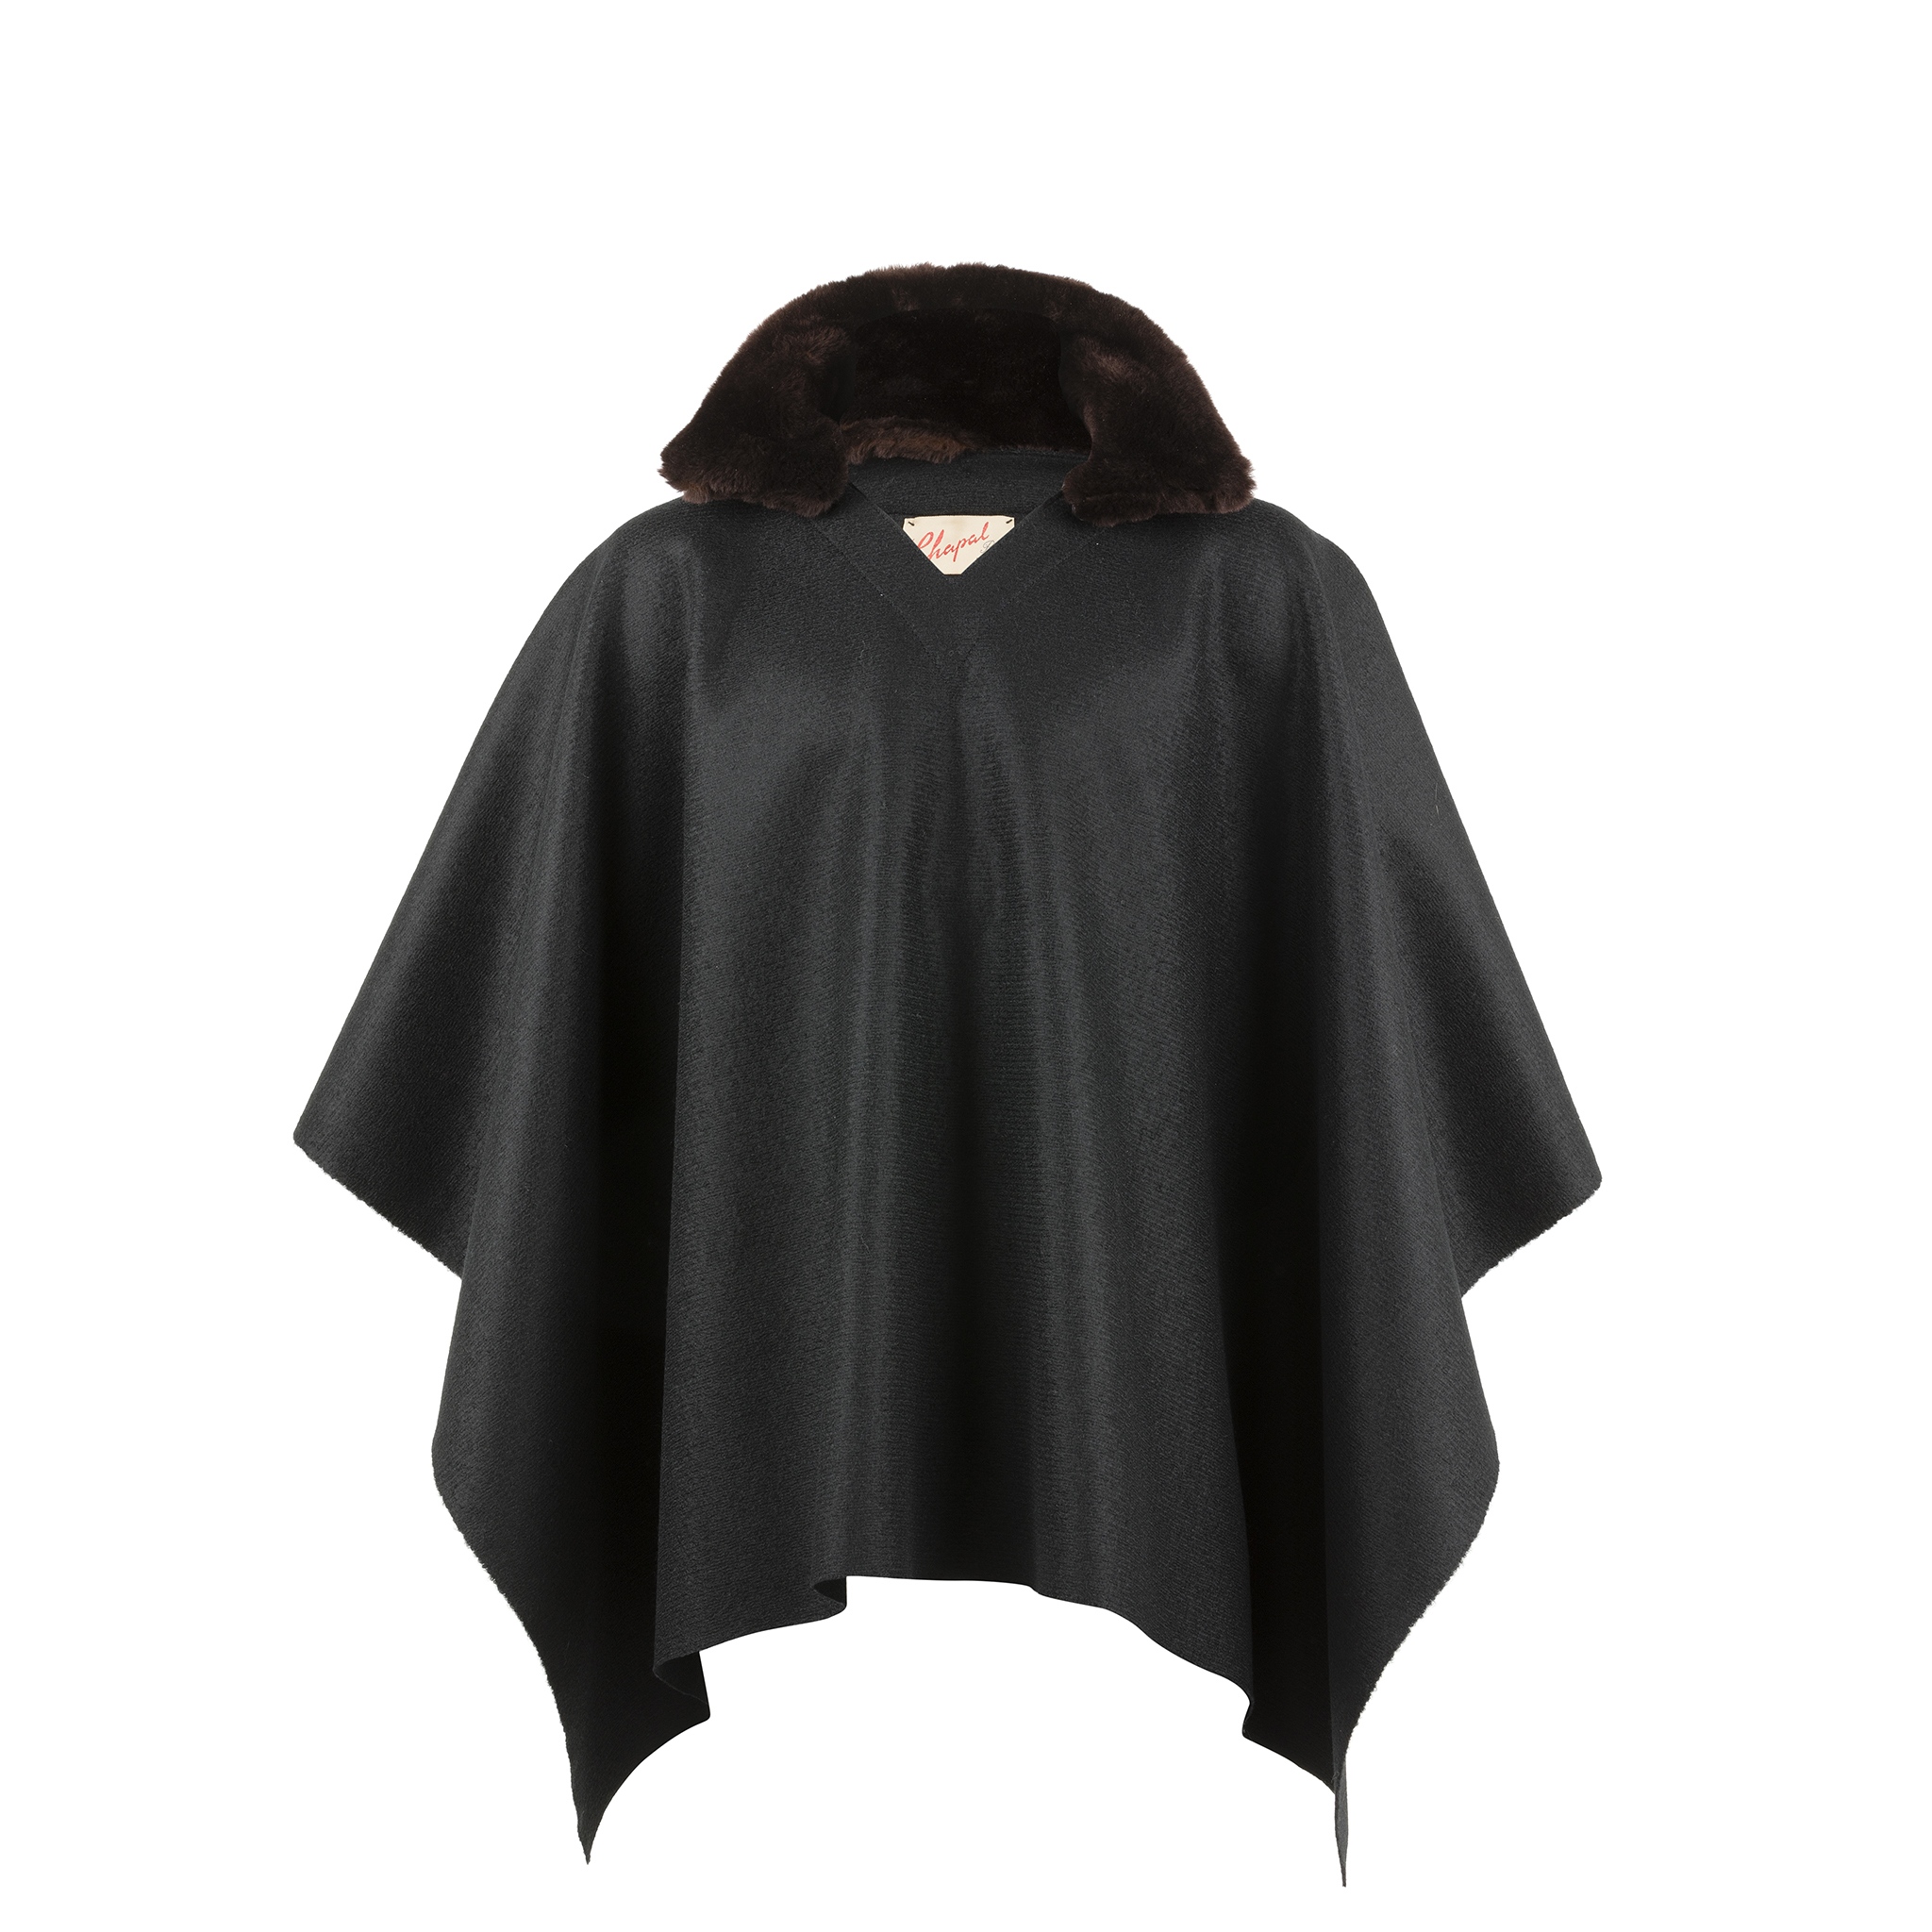 Poncho - Merino wool - Black color